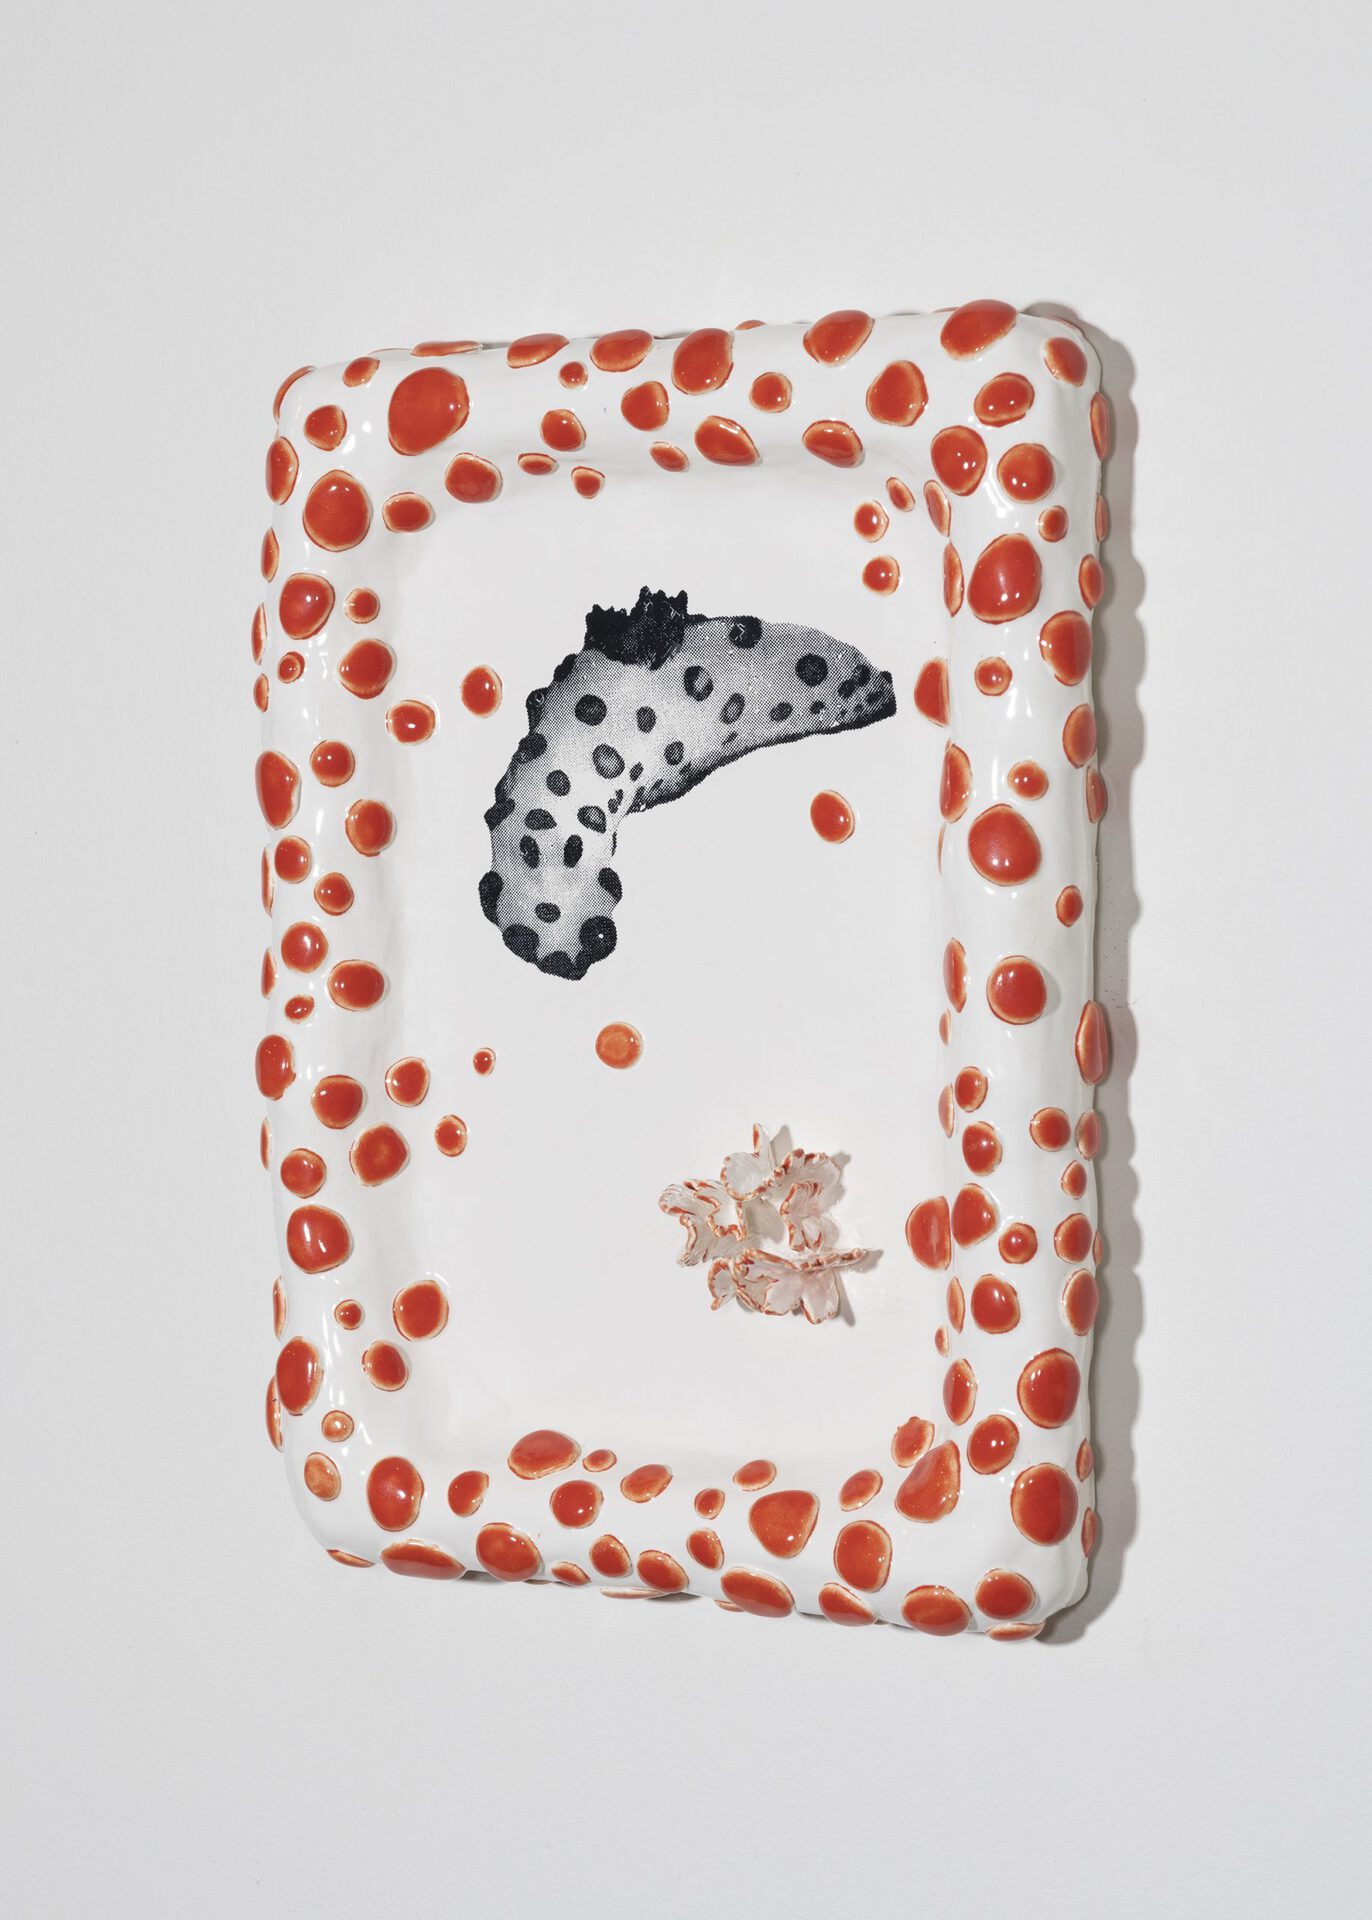 June Fischer, Gymnodoris Impudica, 2020, Silkscreen on porcelain, 21 x 29.7 cm